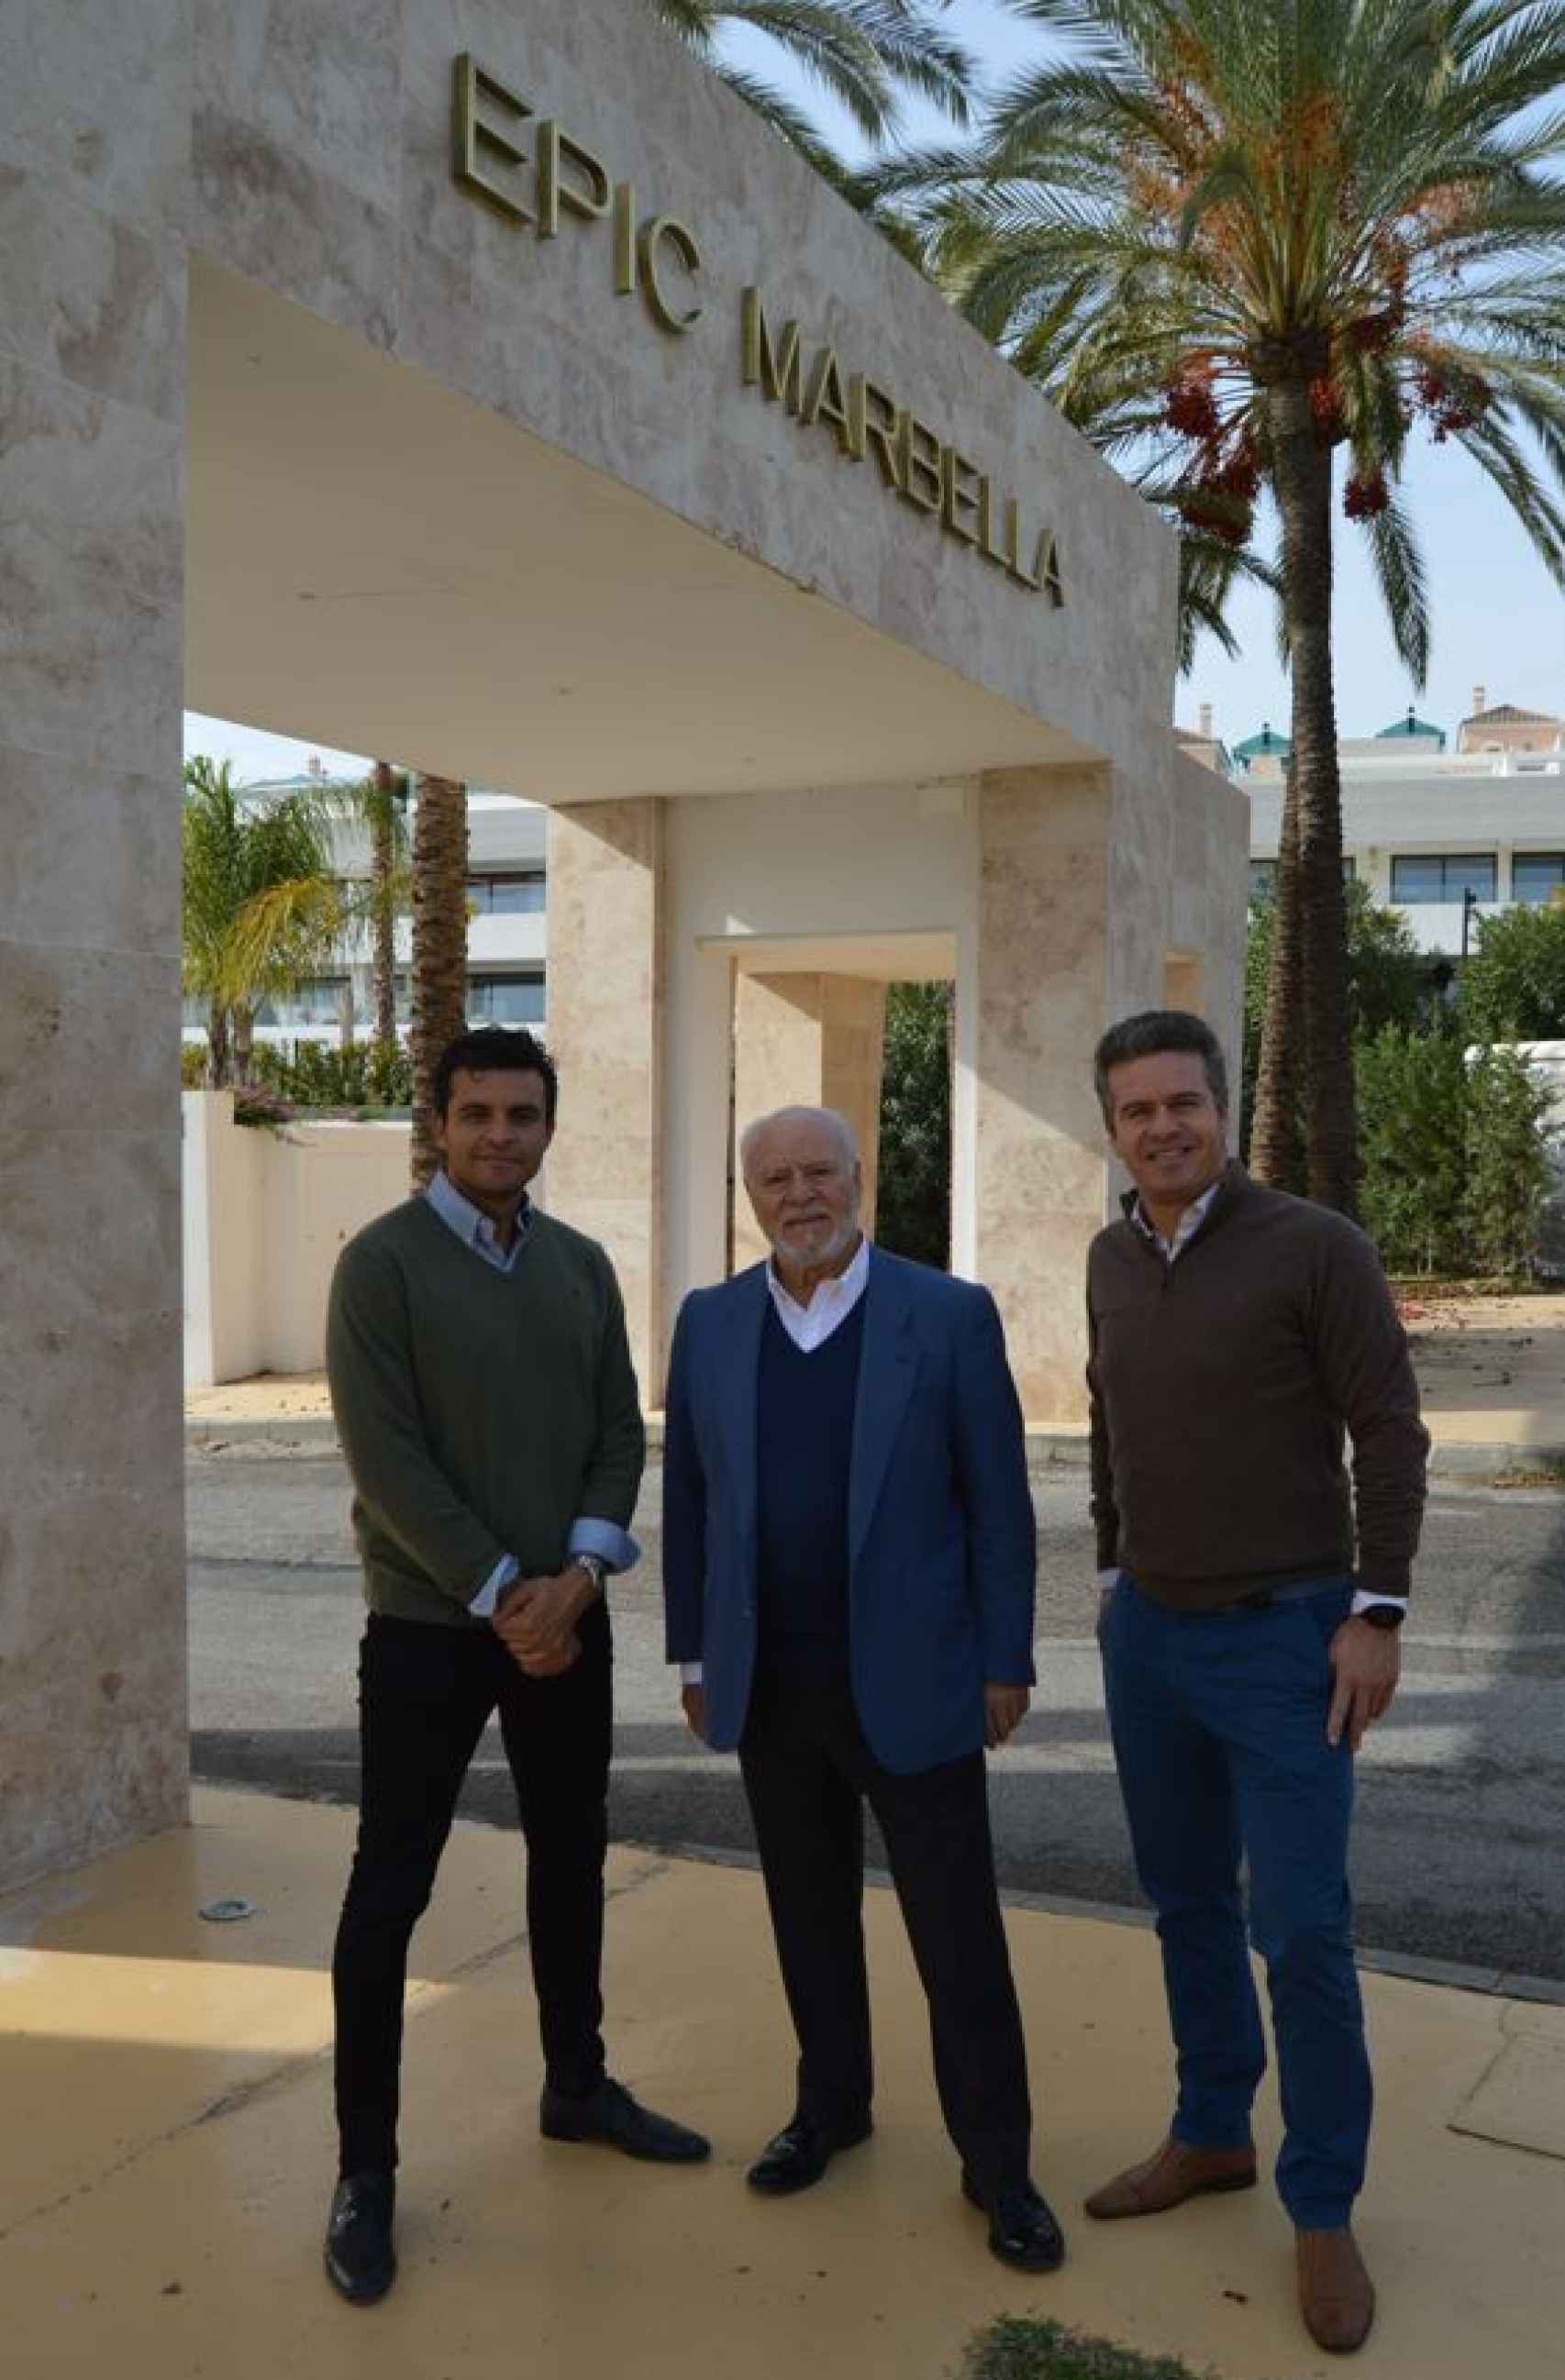 Los responsables de Sierra Blanca, junto al arco de entrada a la urbanización EPIC en Marbella.